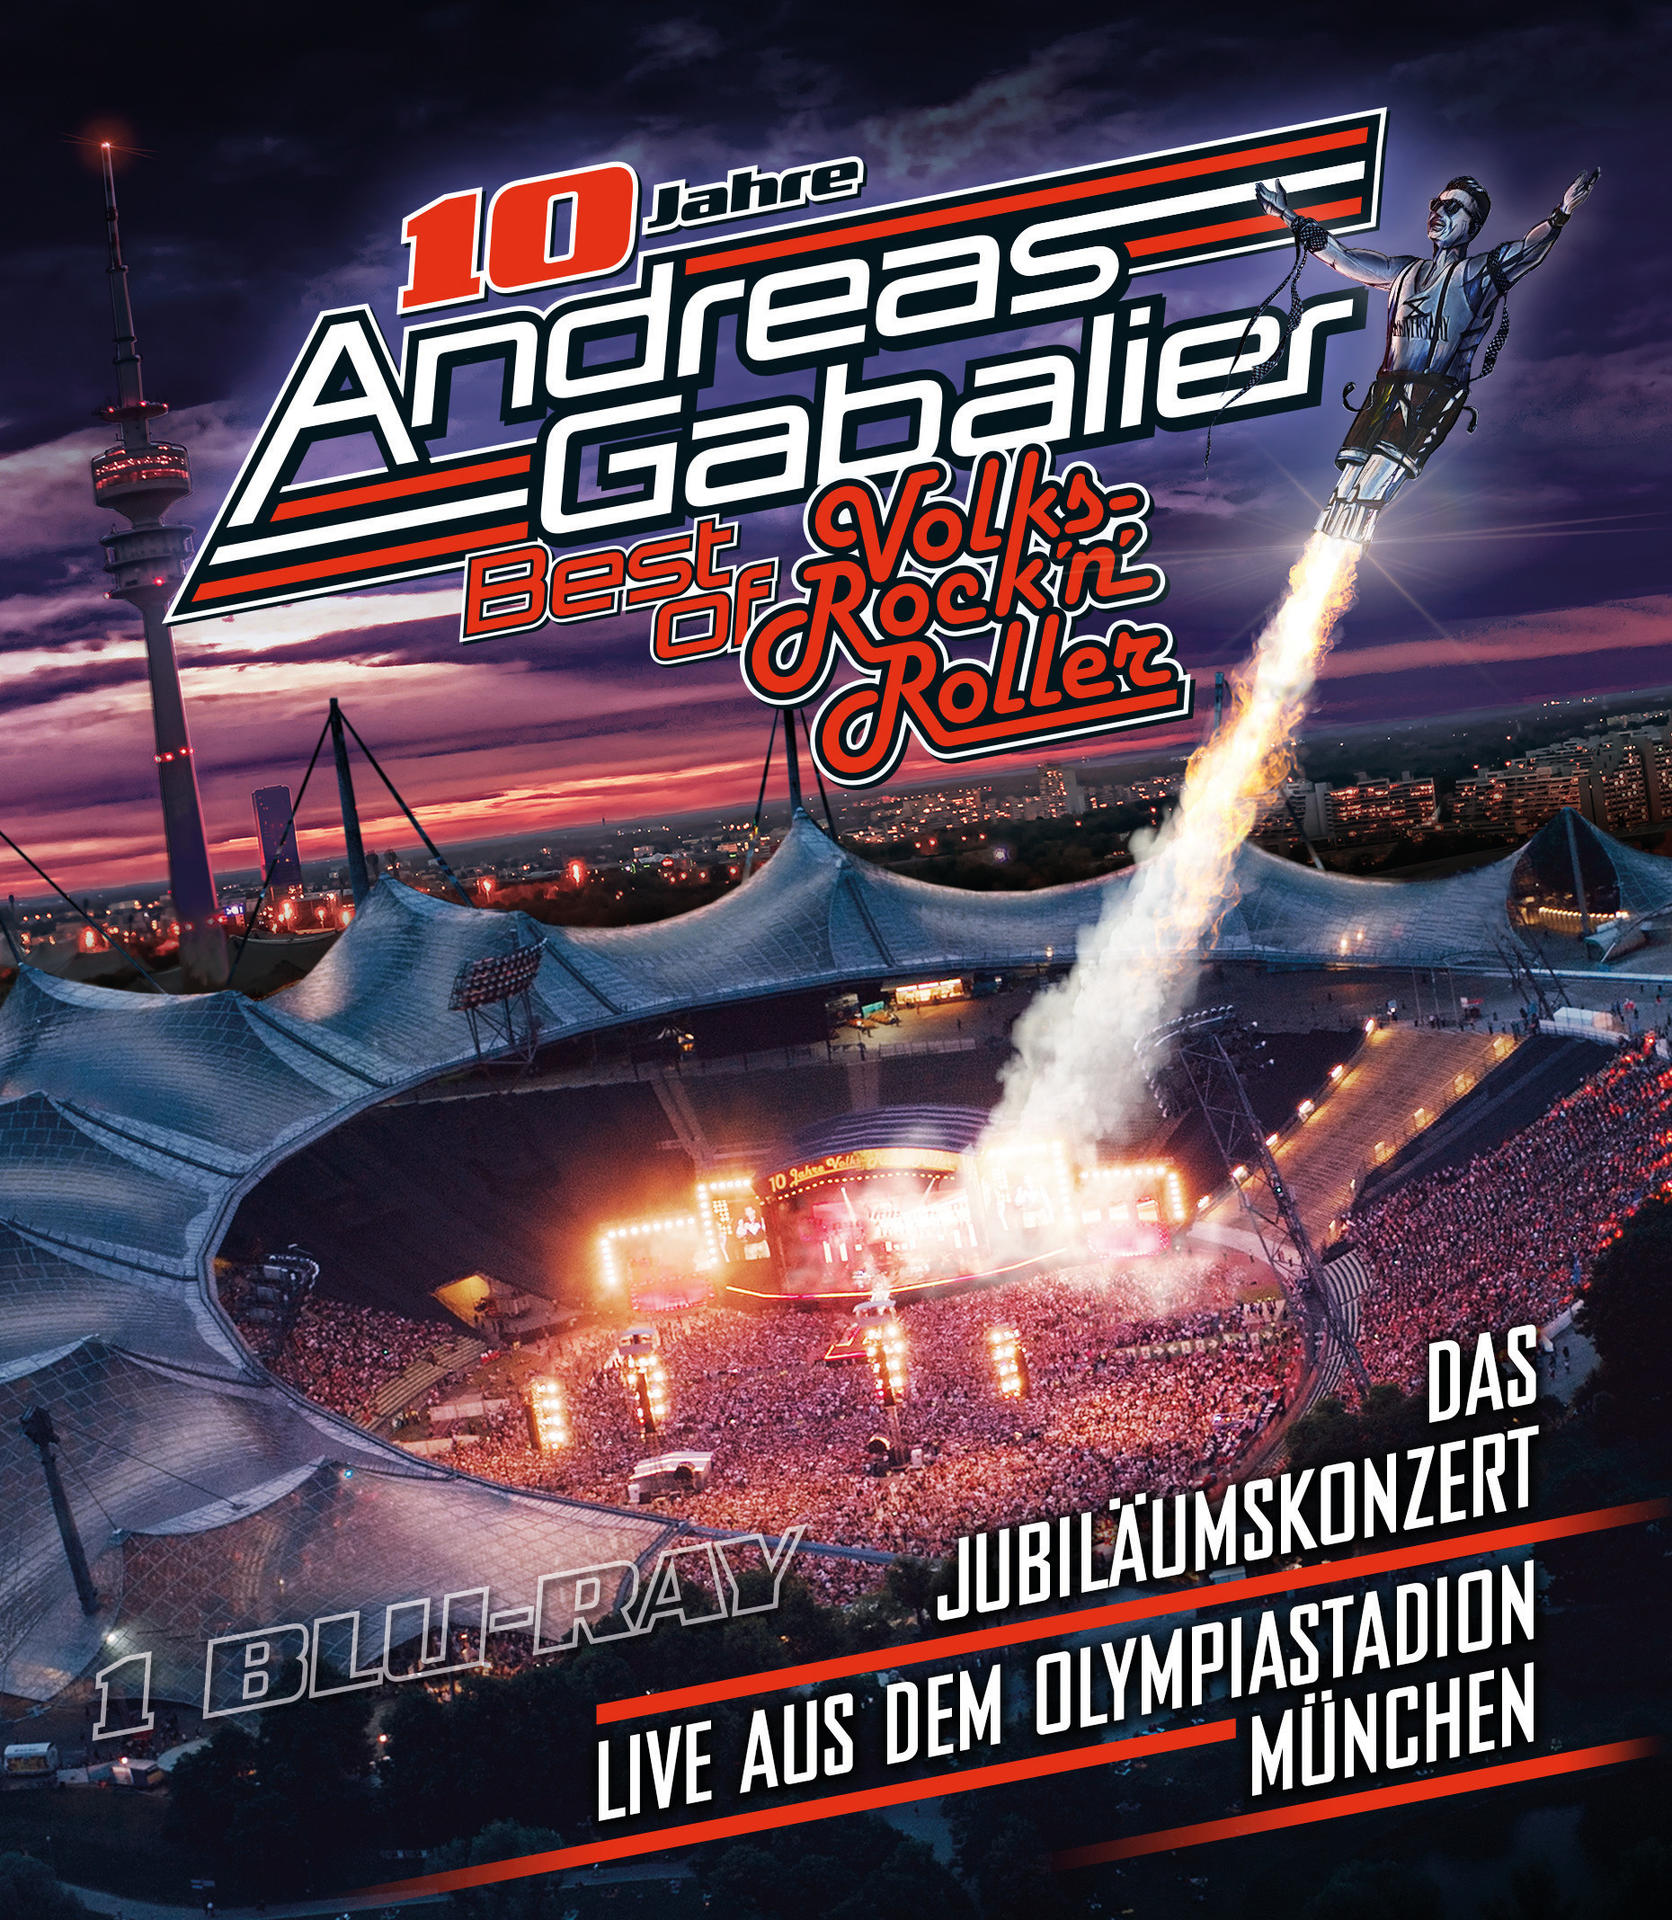 München - Gabalier Olympiastadion Best – Das aus (Blu-ray) - Andreas Jubiläumskonzert in live of dem Volks-Rock’n’Roller